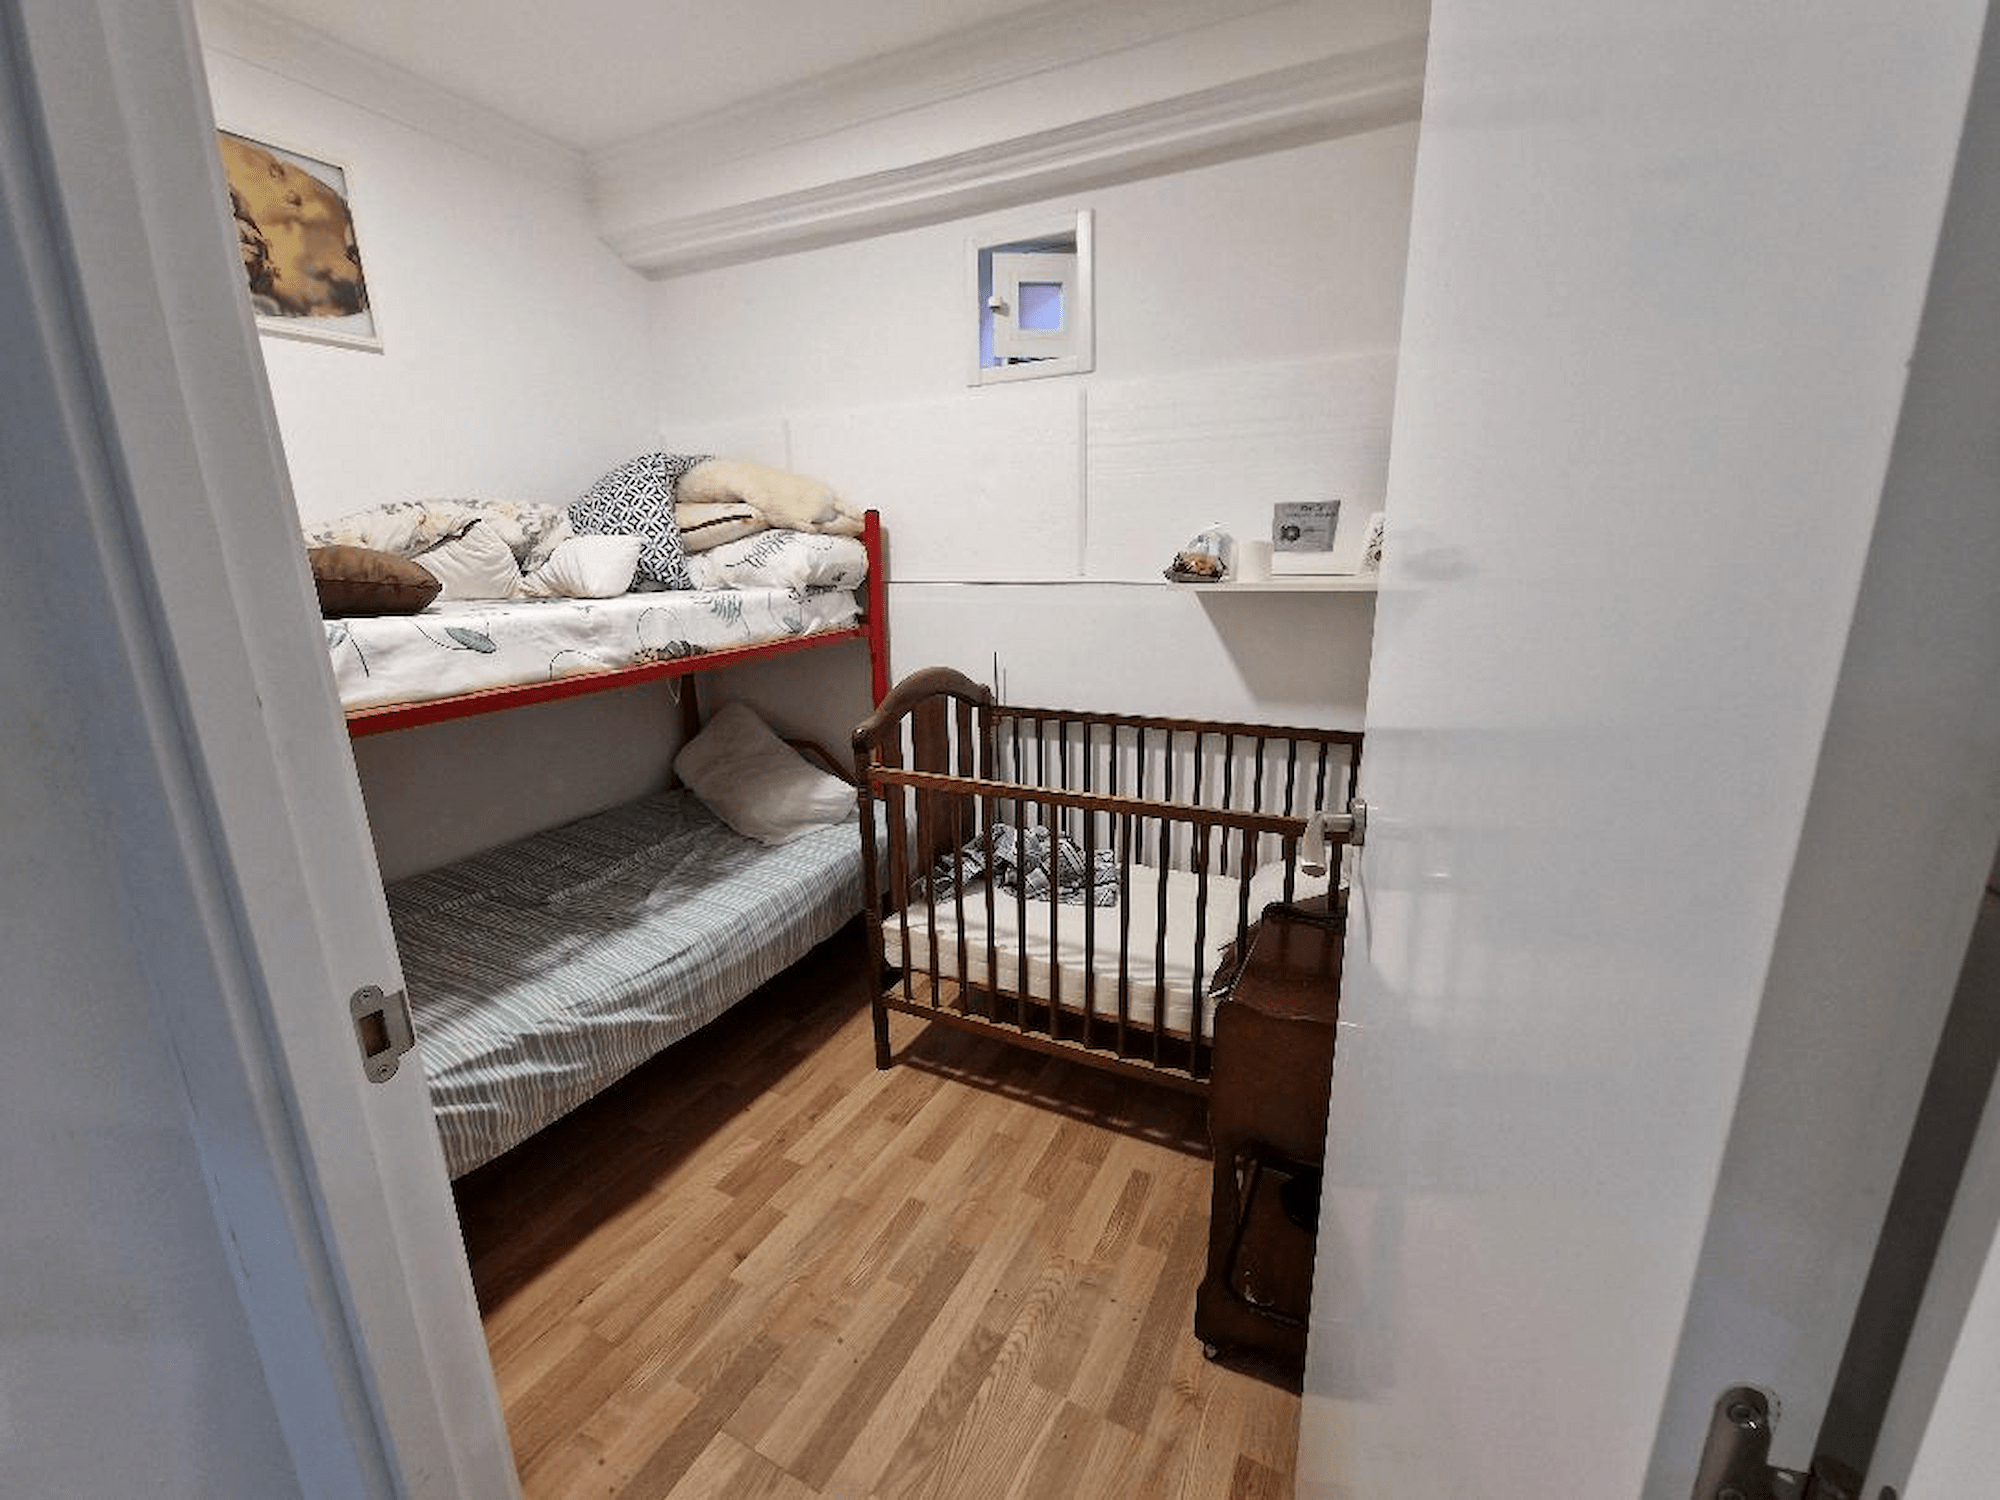 Palmeras 7 - 6 bedroom house for rent in San Sebastian de Los Reyes- Bedroom